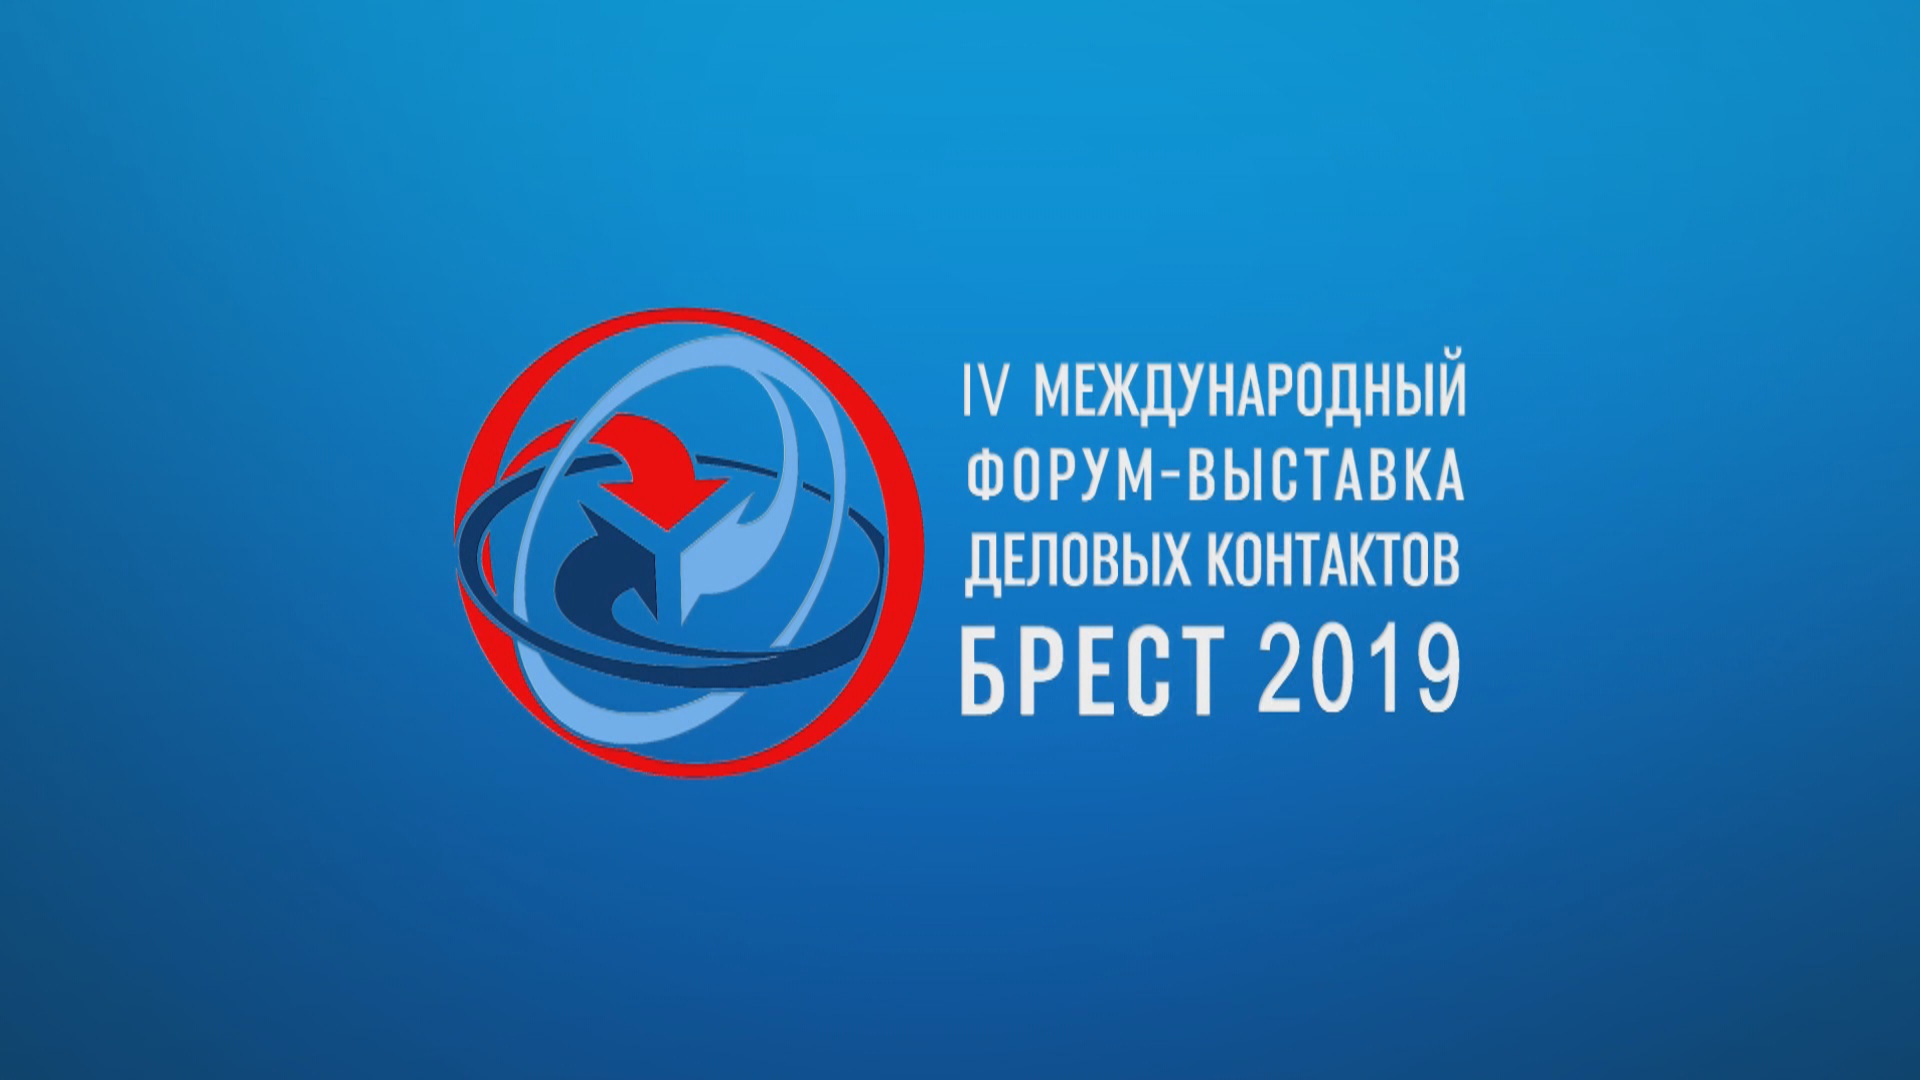 IV Международный форум-выставка деловых контактов "Брест 2019" (3)